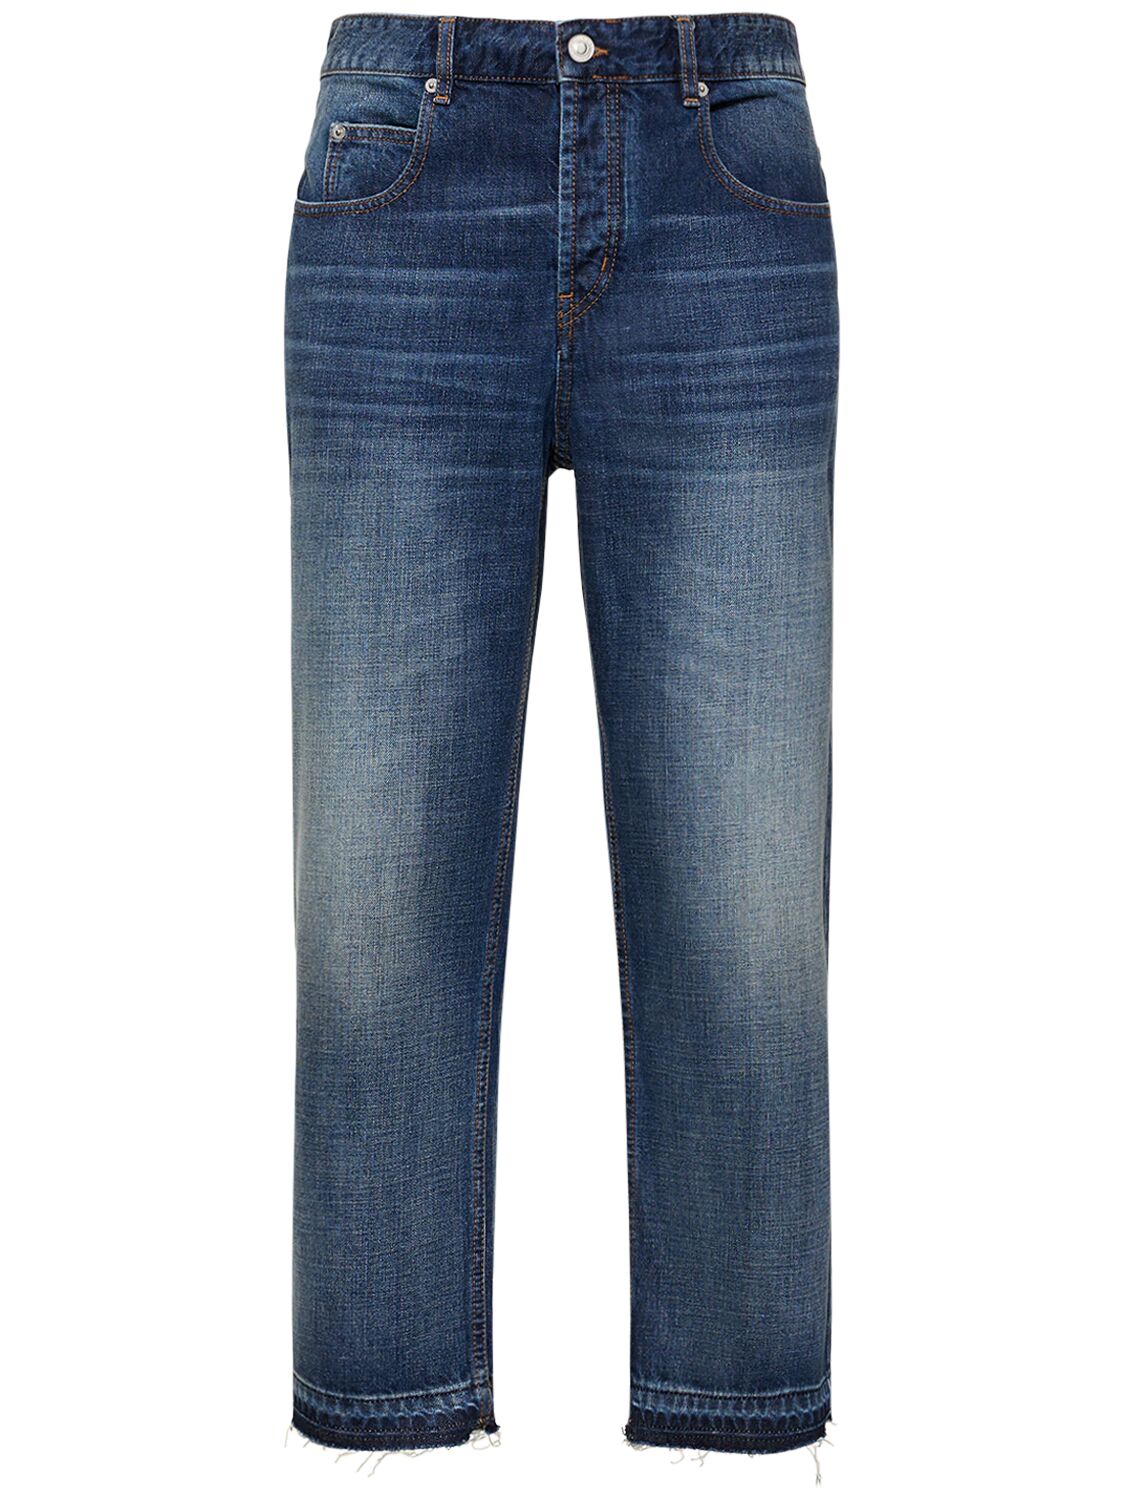 Jelden Faded Cotton Denim Jeans – MEN > CLOTHING > JEANS